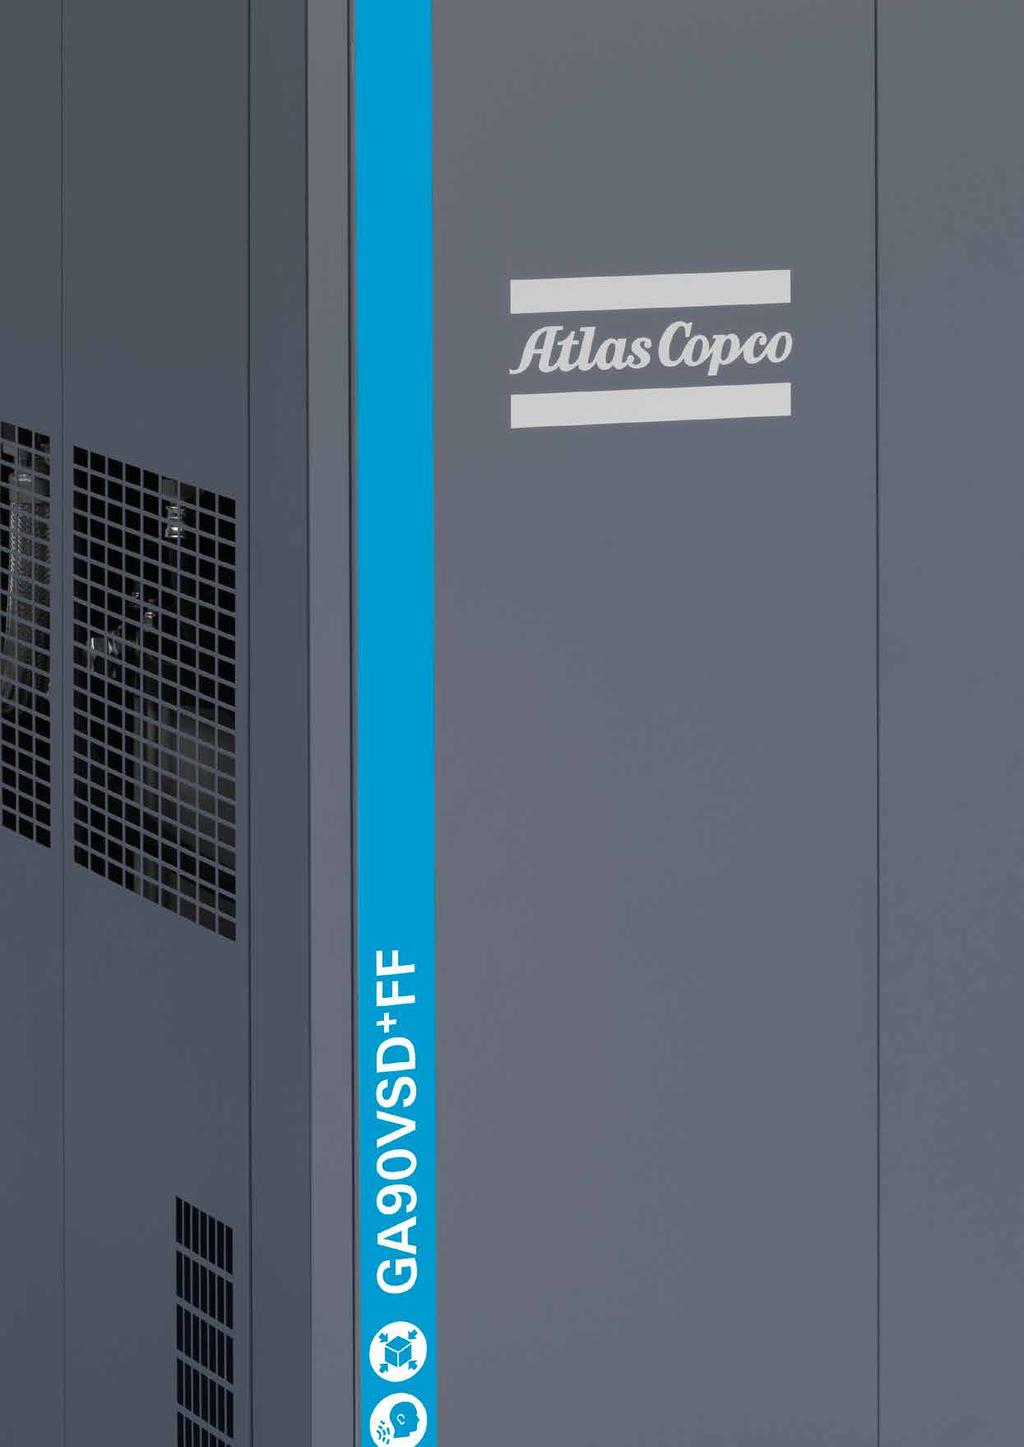 Az Atlas Copco forradalmi új kompresszora Az Atlas Copco GA 75-110 VSD + új szintet jelent a kompresszorok világában.